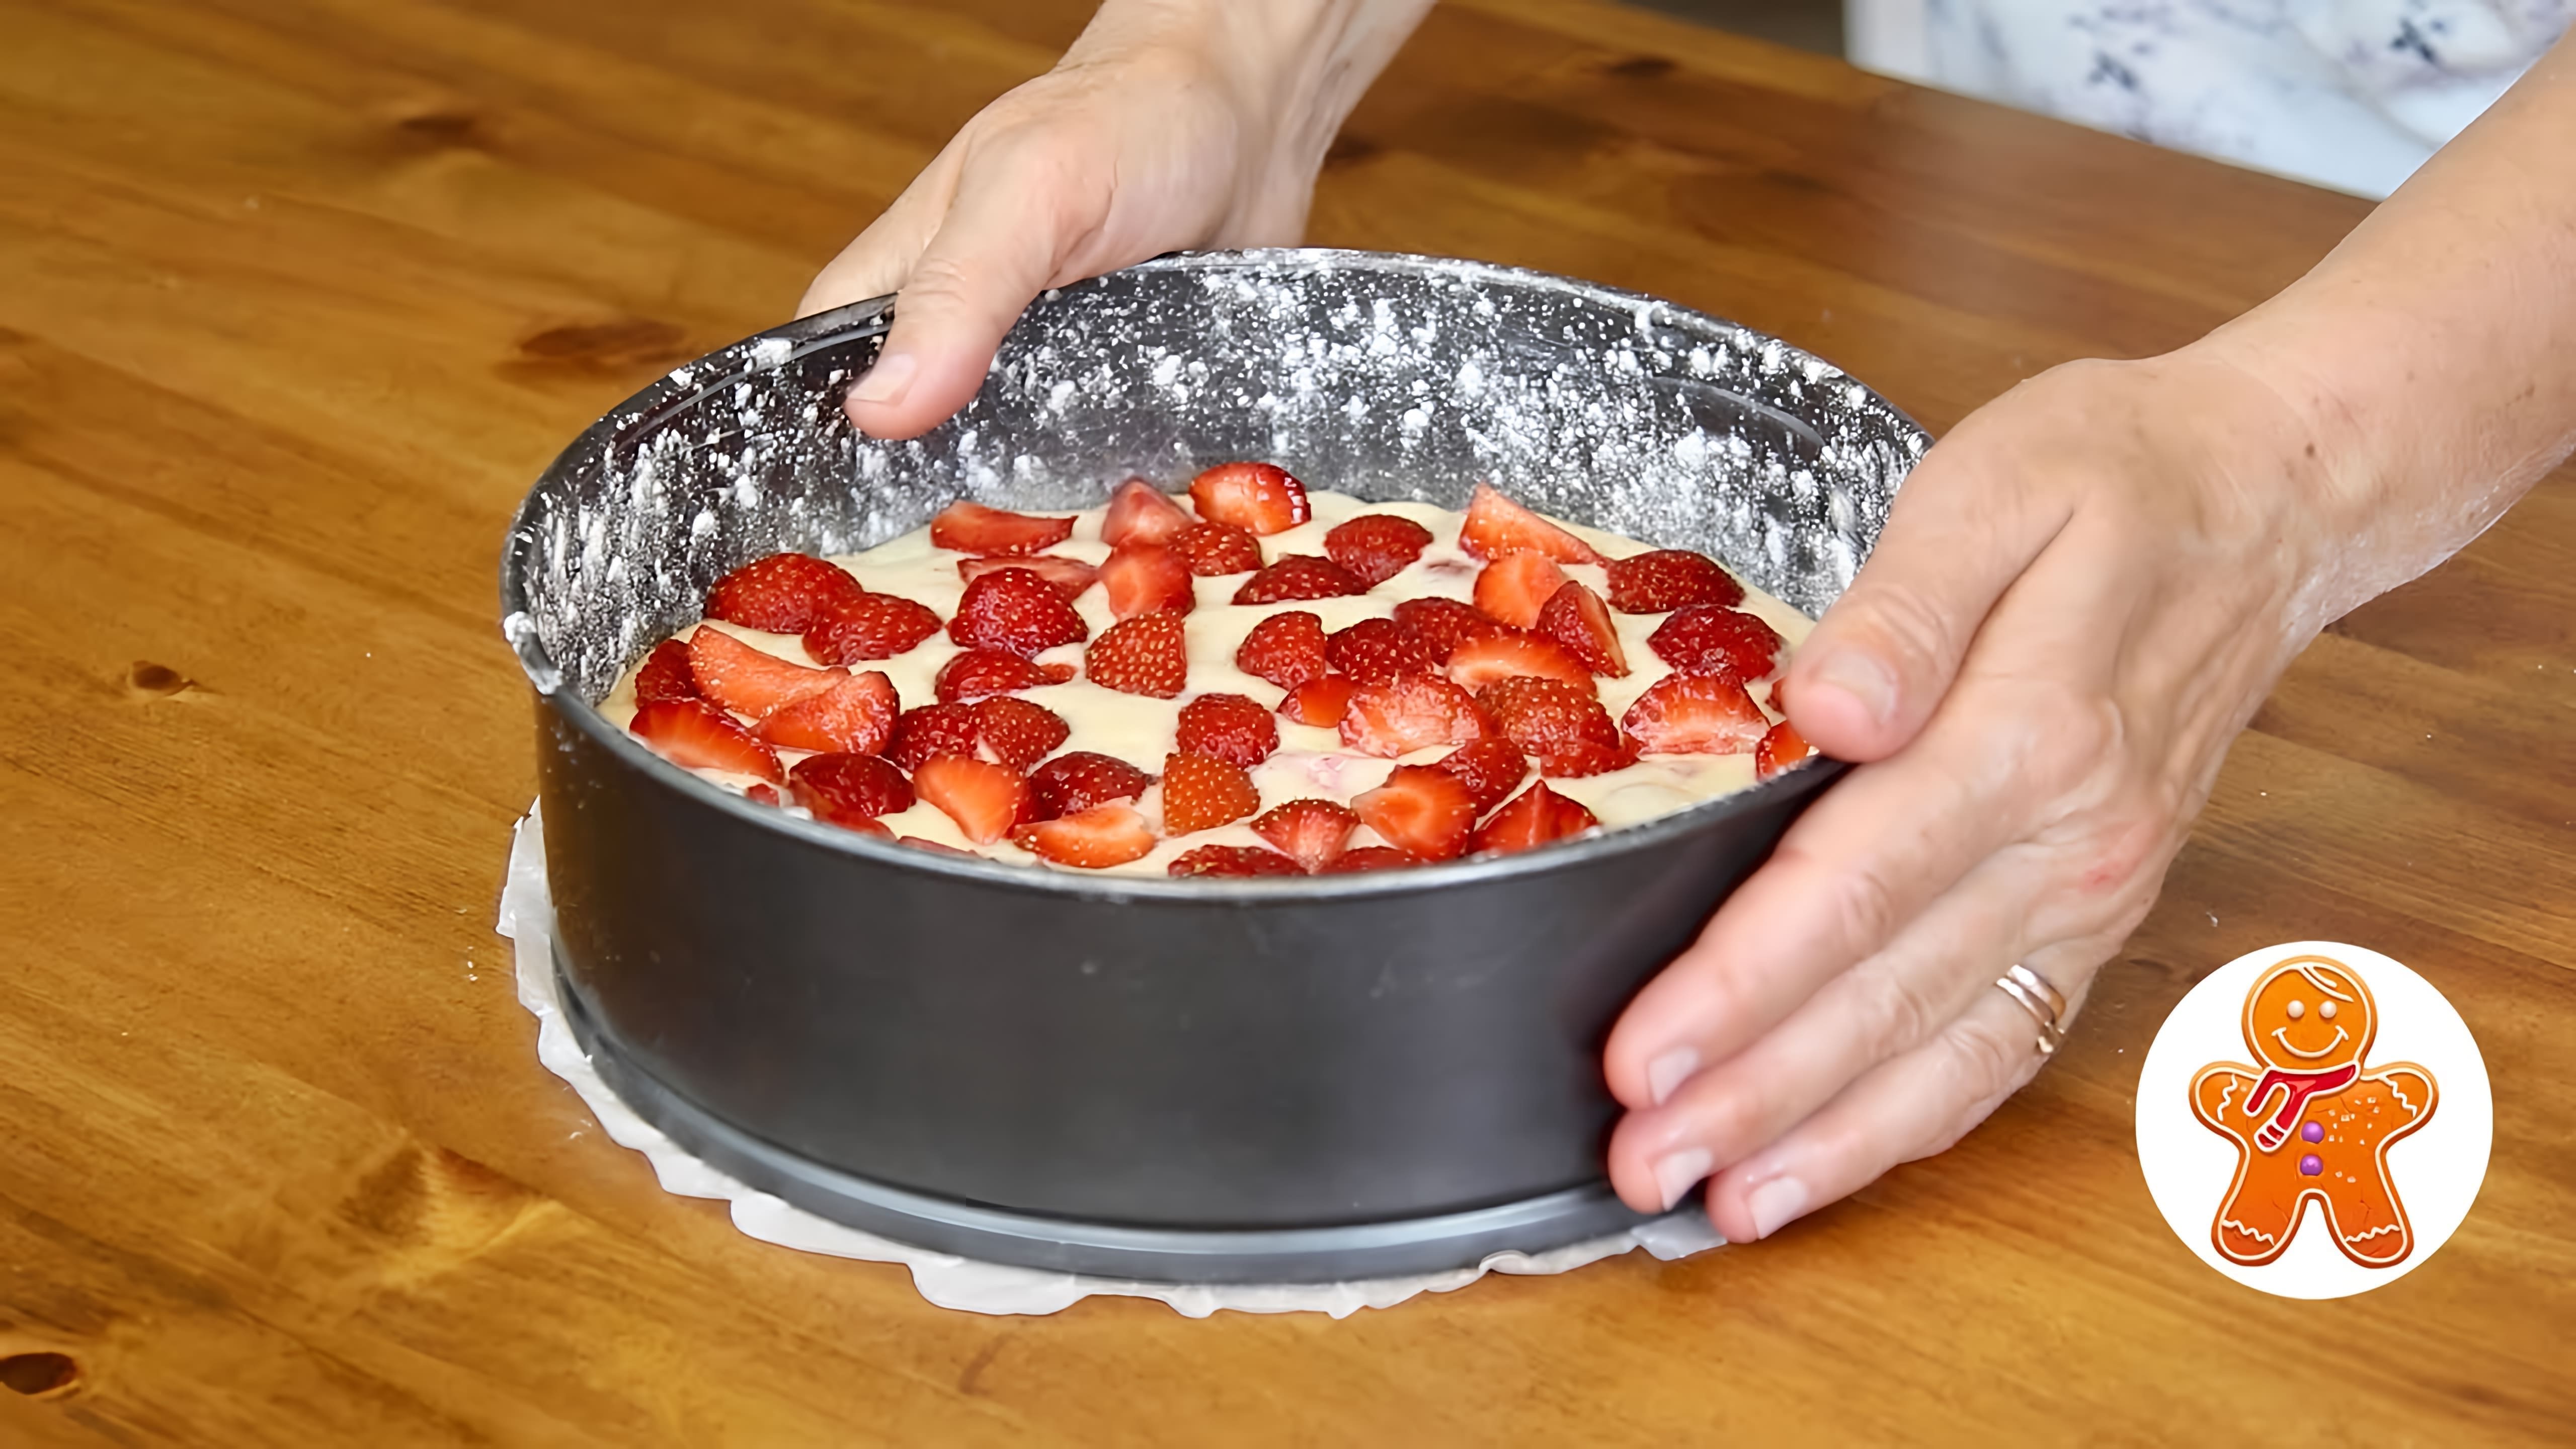 В этом видео демонстрируется рецепт быстрого ягодного пирога, который готовится с клубникой, но может быть приготовлен и с другими ягодами и фруктами